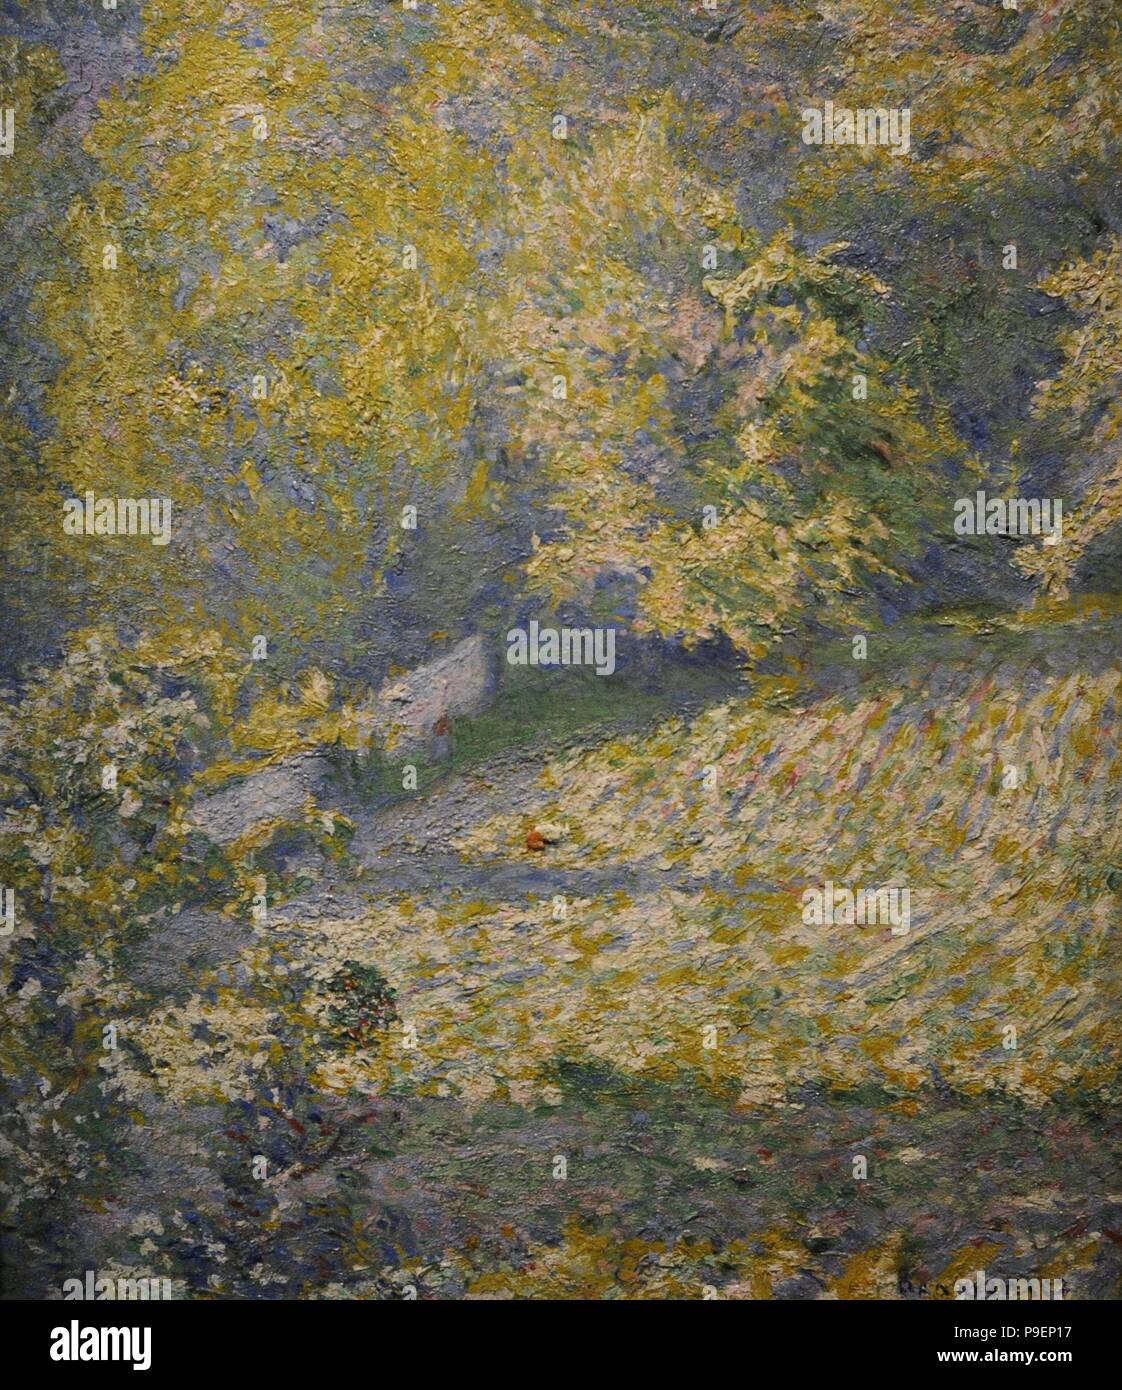 Jozef Pankiewicz (1866-1940). Peintre polonais. L'été (un paysage avec des arbustes). 1890, musée de Silésie. Katowice. La Pologne. Banque D'Images